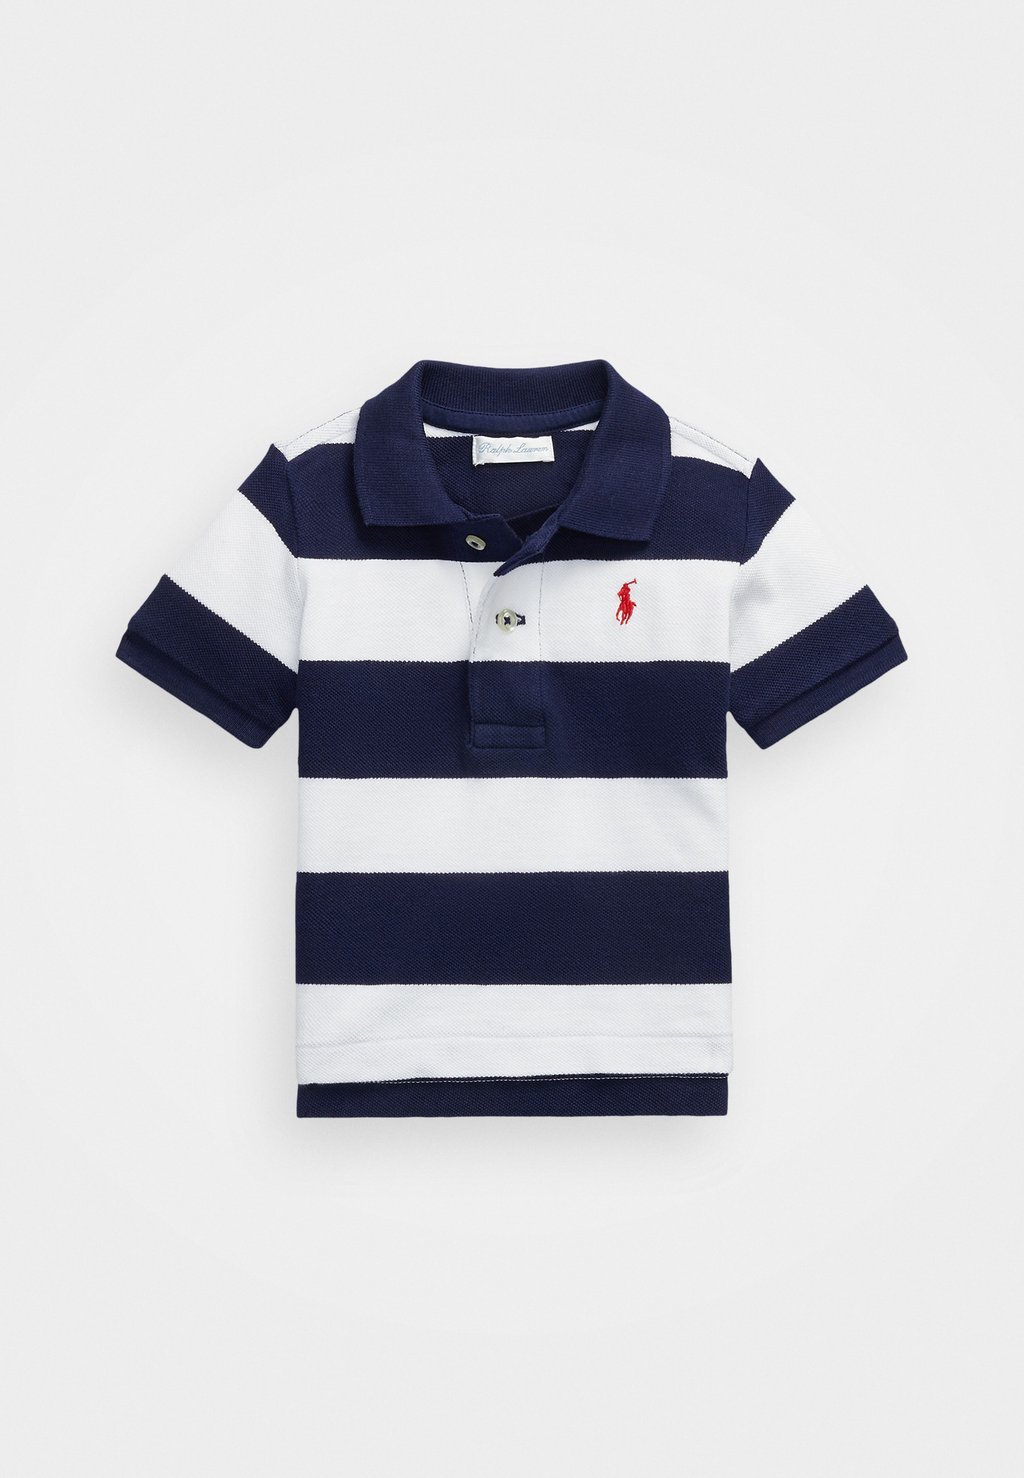 Рубашка-поло BABY Polo Ralph Lauren, цвет newport navy/white